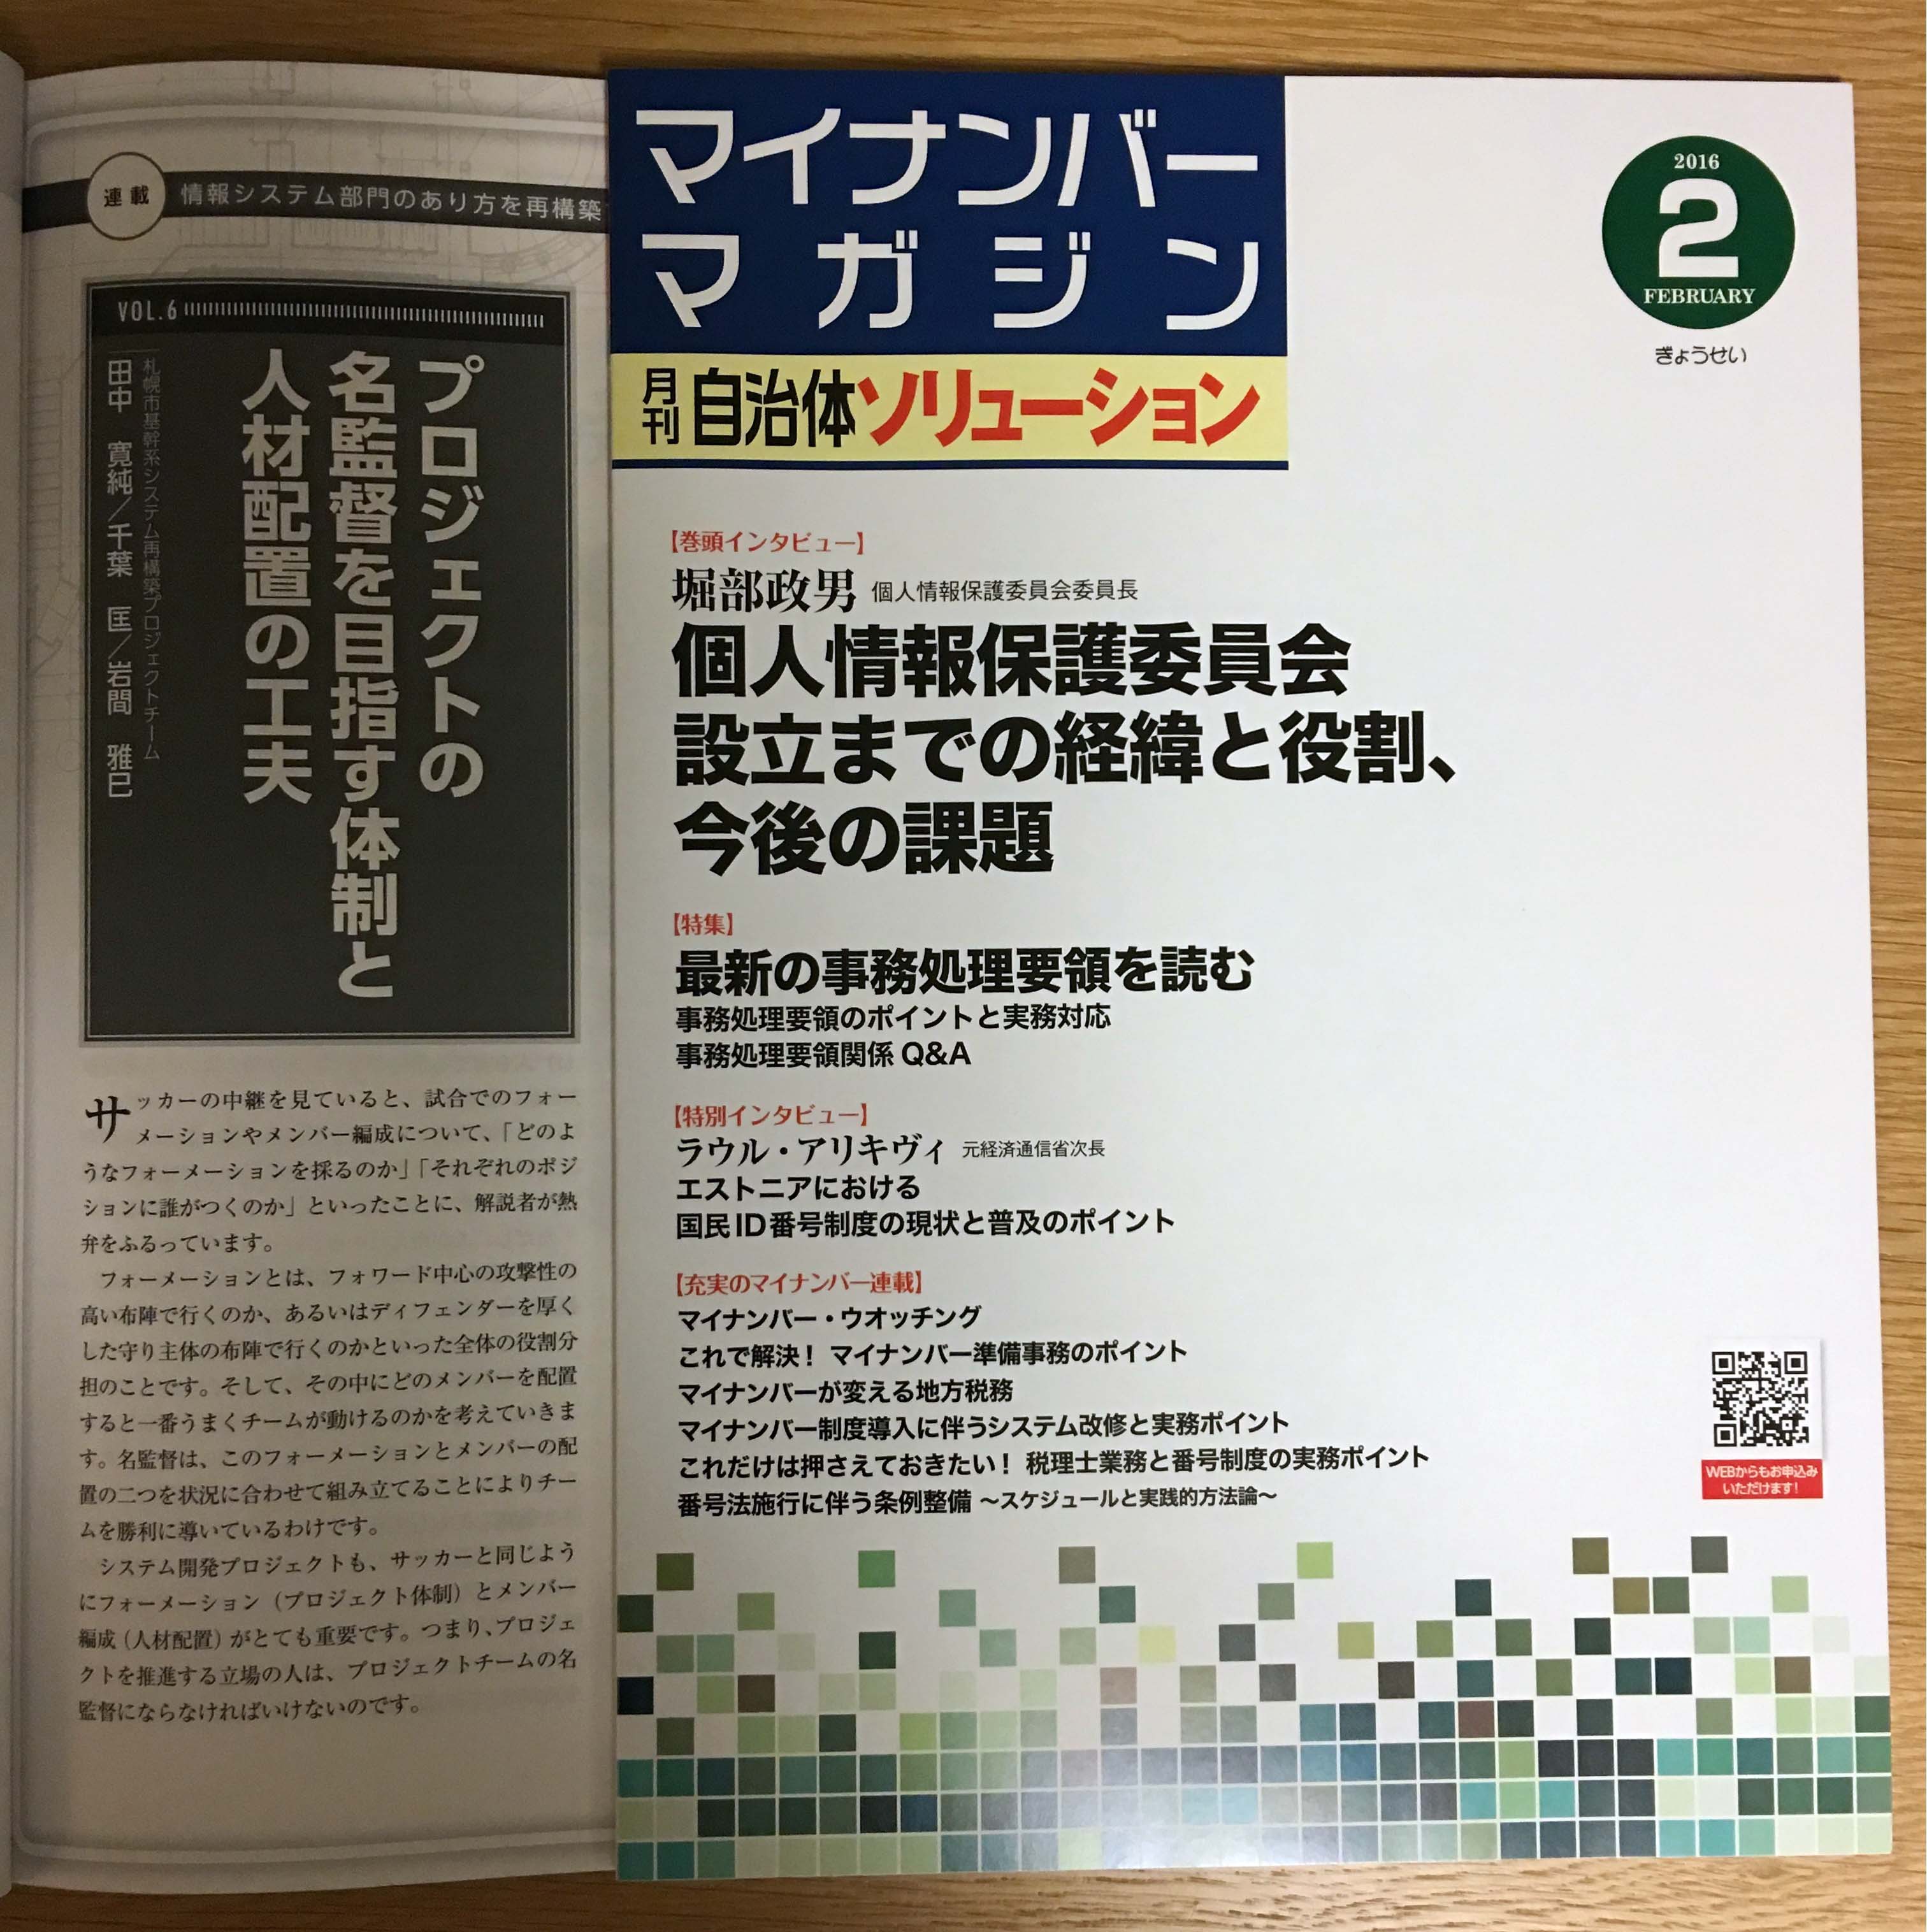 自治体ソリューション4月号が発刊されました。